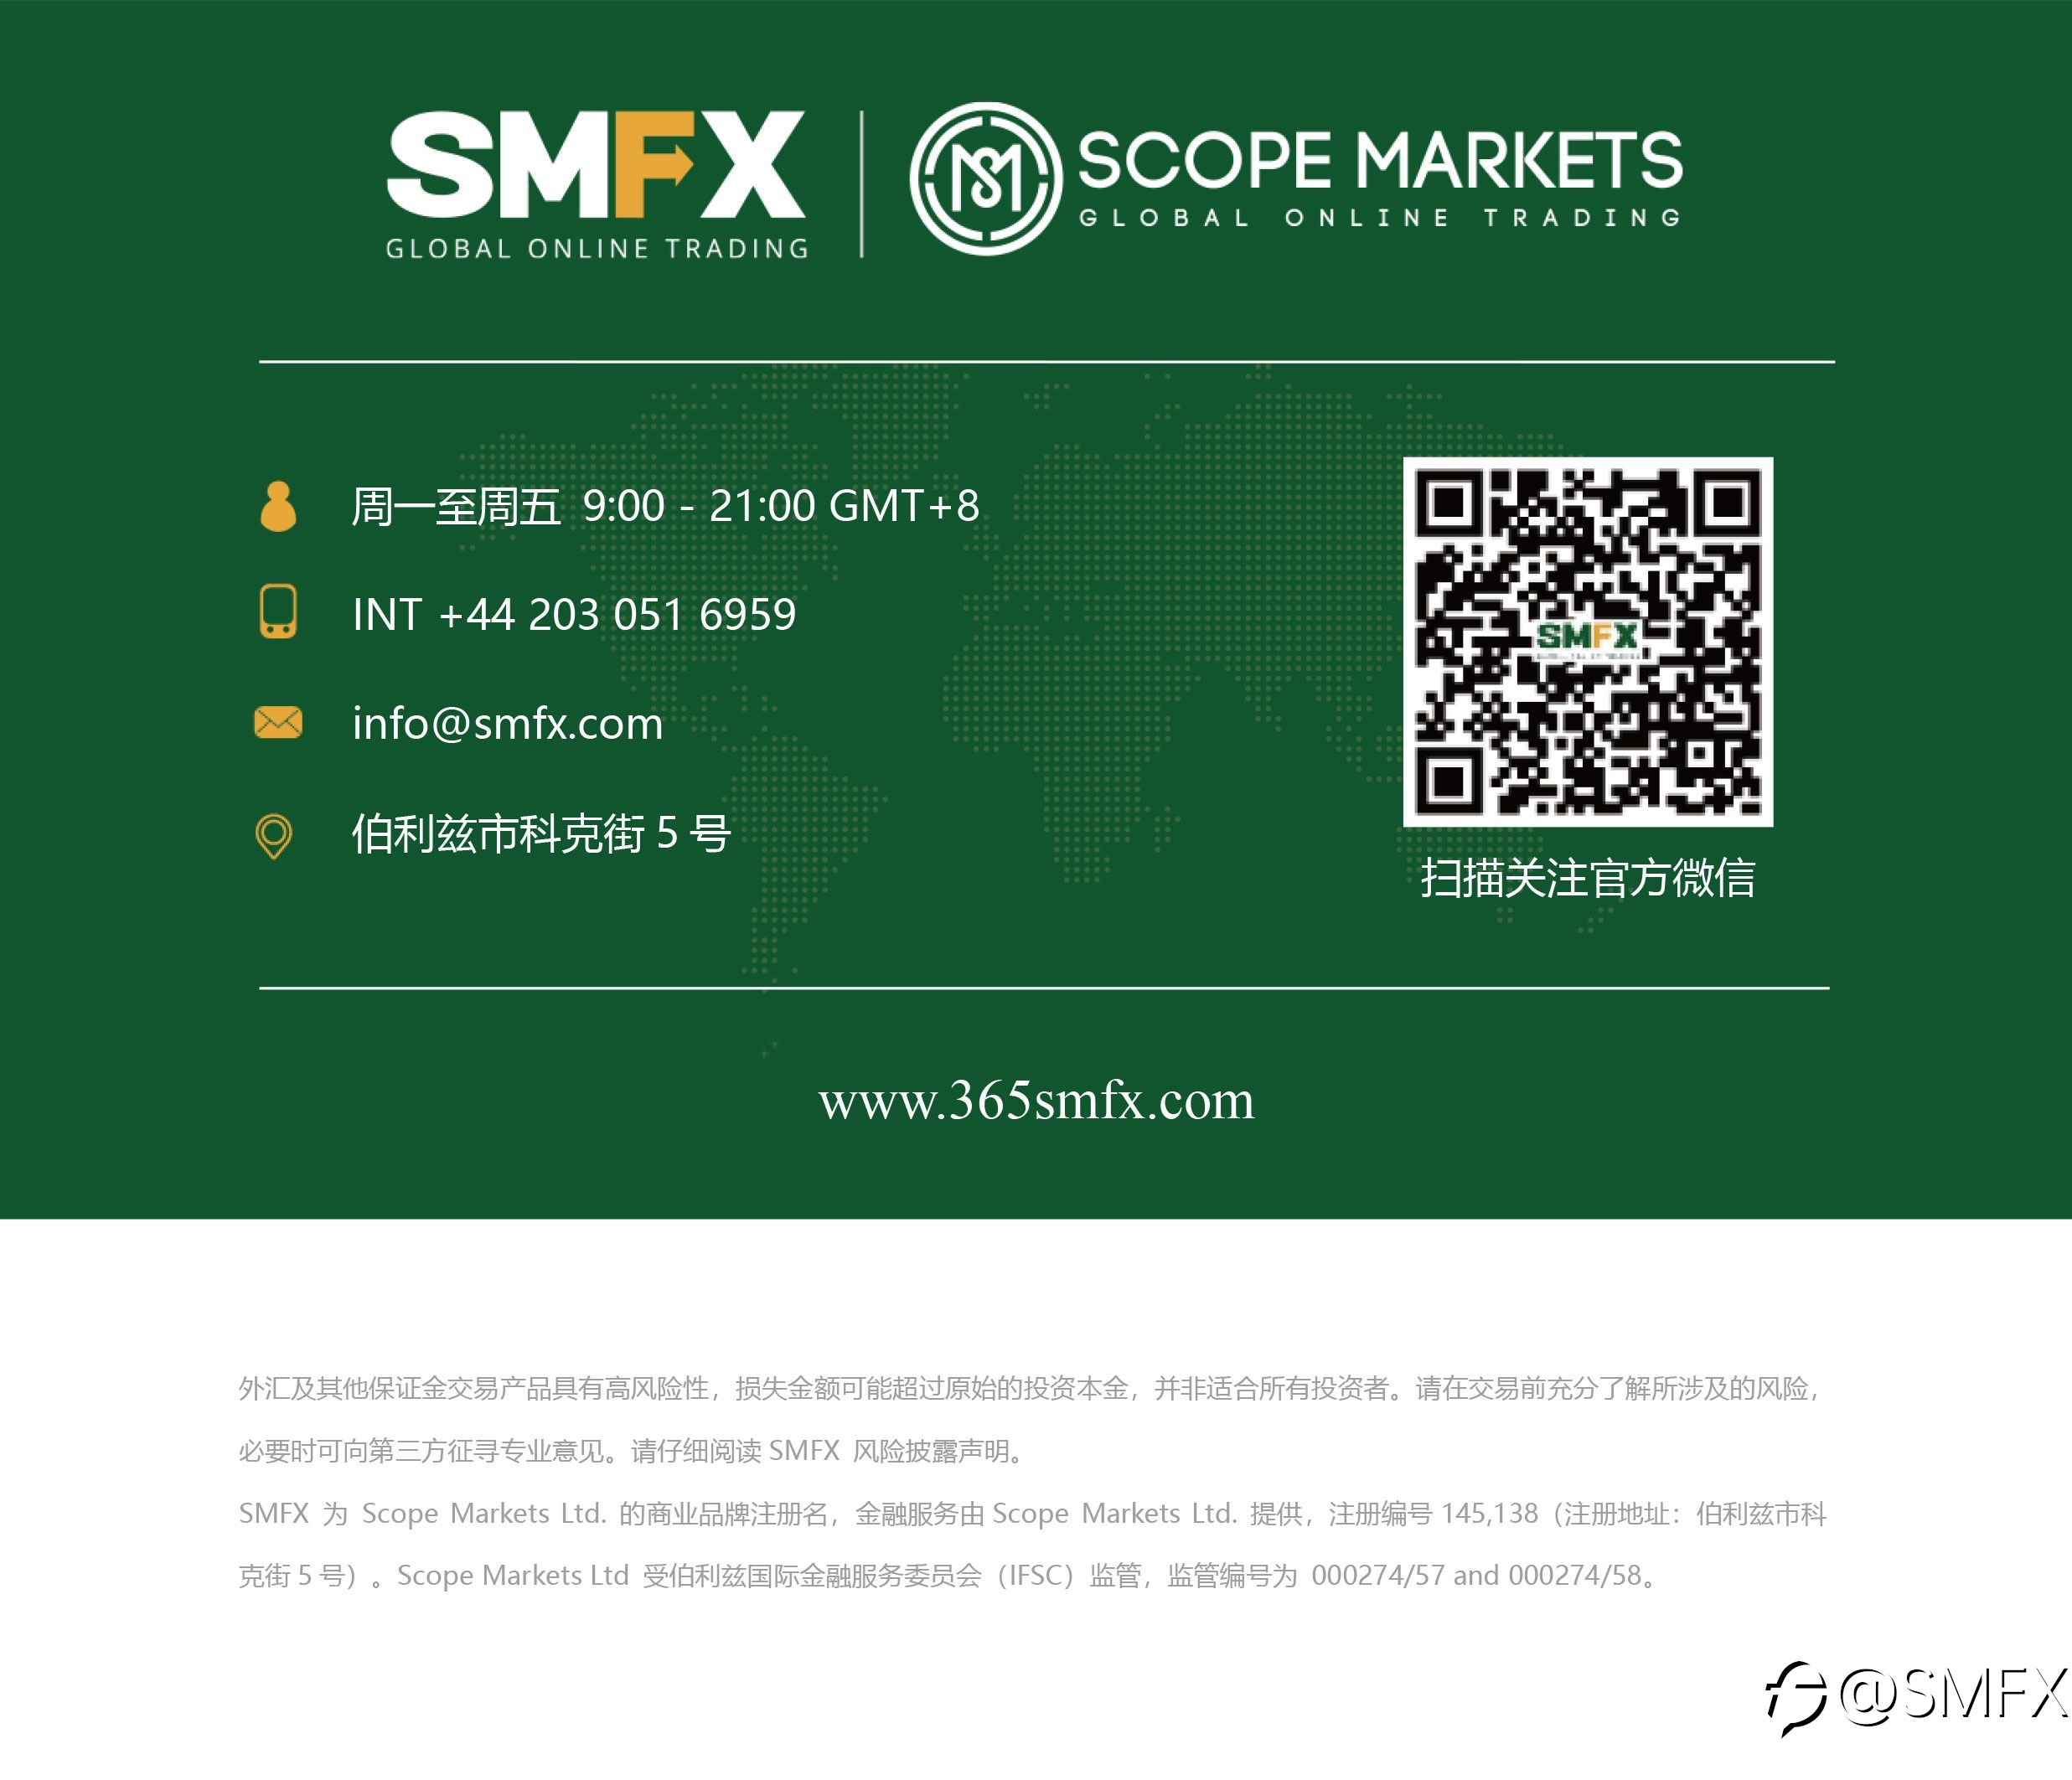 SMFX【市场早评】2020.11.23丨金油延续上涨节奏 美股疲软高位下跌